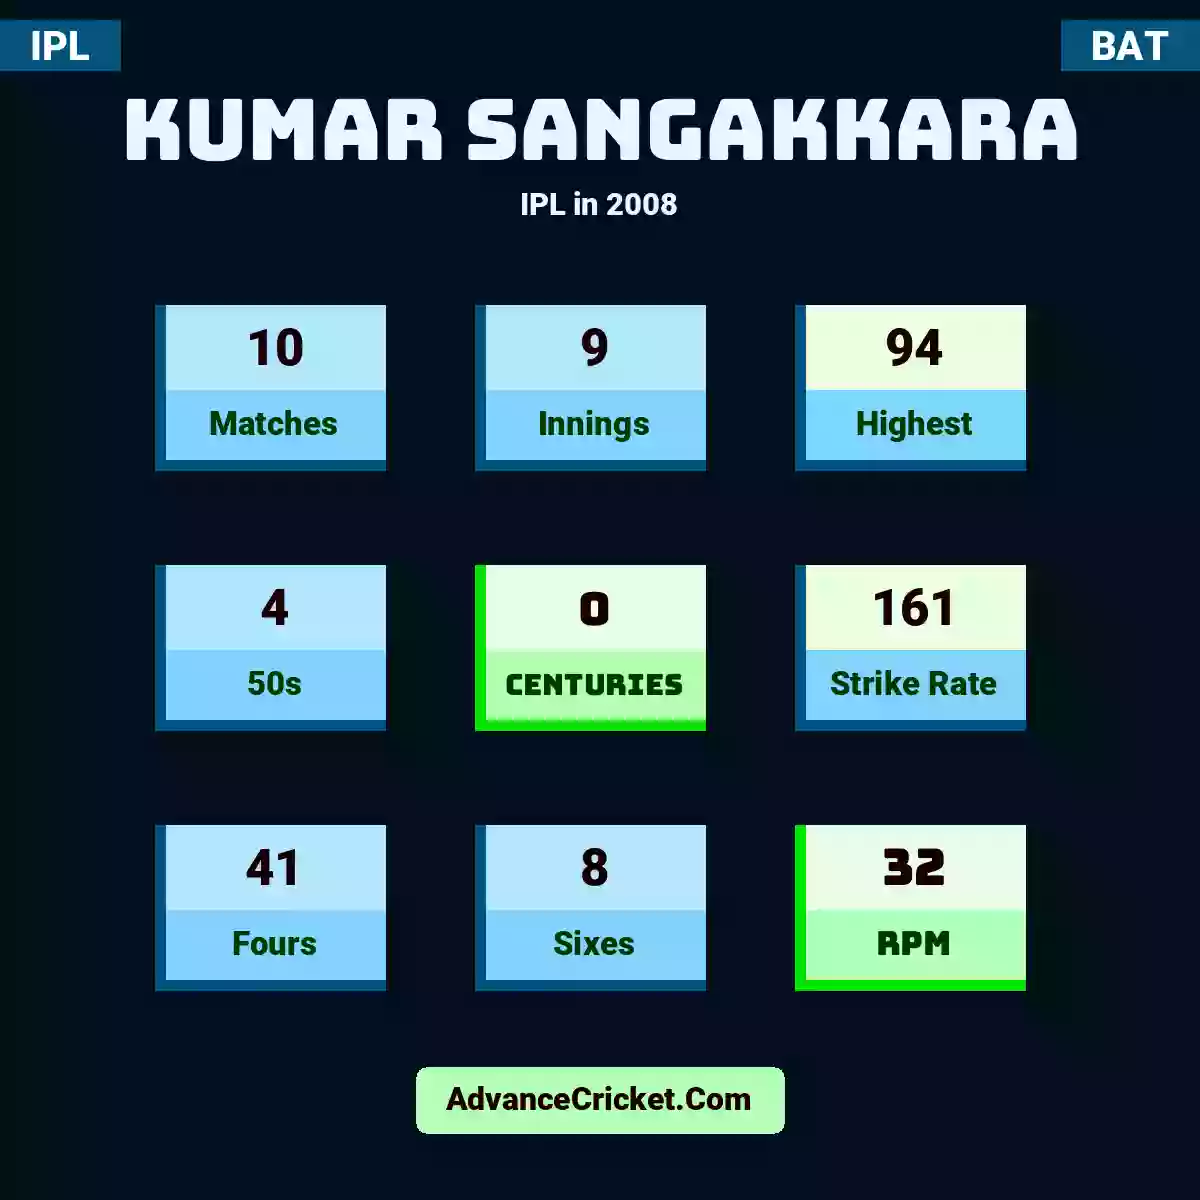 Kumar Sangakkara IPL  in 2008, Kumar Sangakkara played 10 matches, scored 94 runs as highest, 4 half-centuries, and 0 centuries, with a strike rate of 161. K.Sangakkara hit 41 fours and 8 sixes, with an RPM of 32.